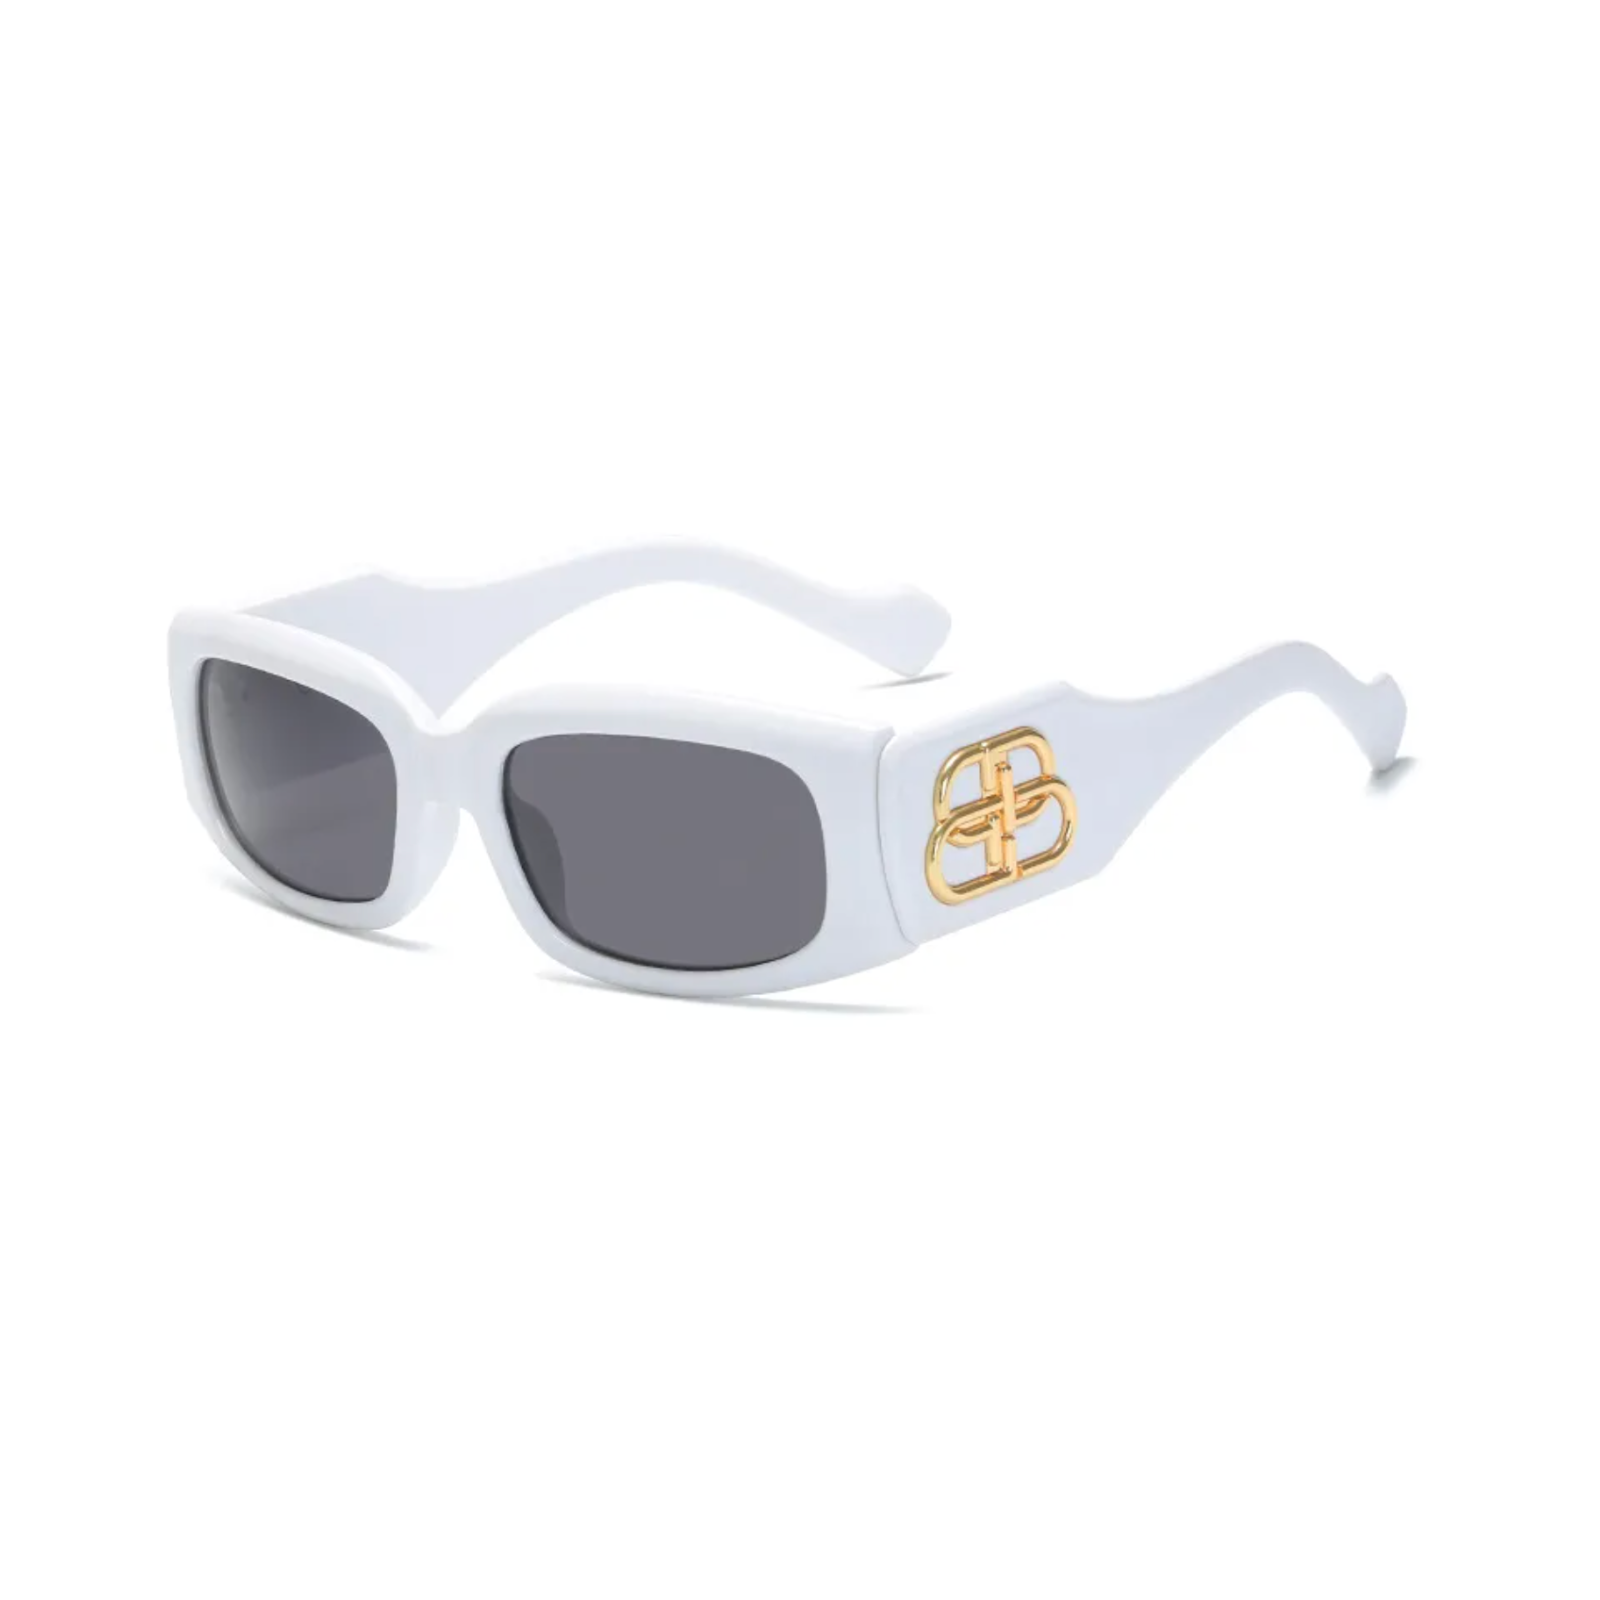 Becca Sunglasses + White